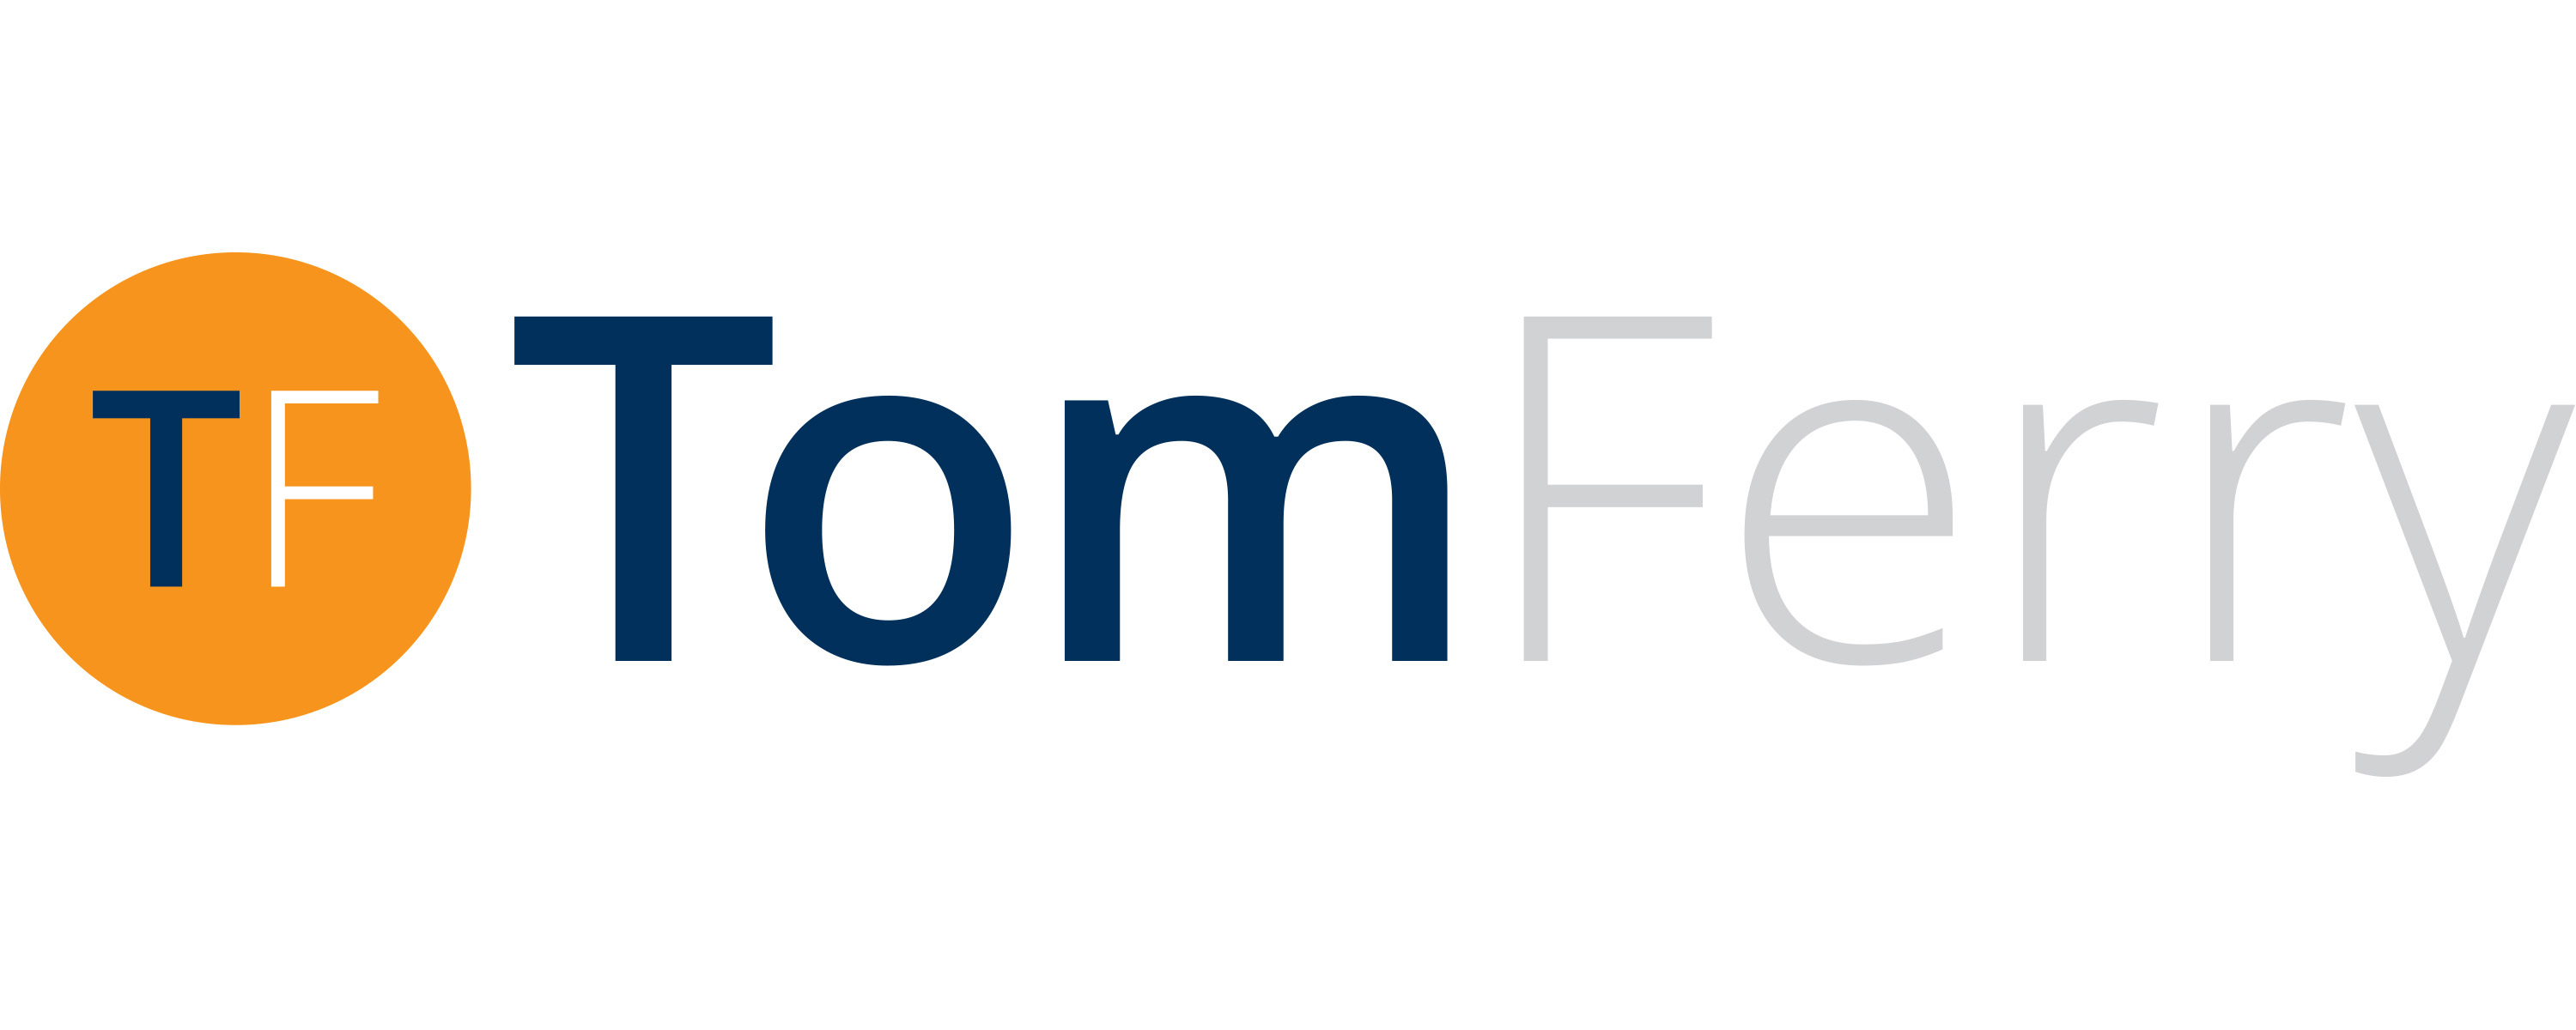 Tom Ferry Company Logo